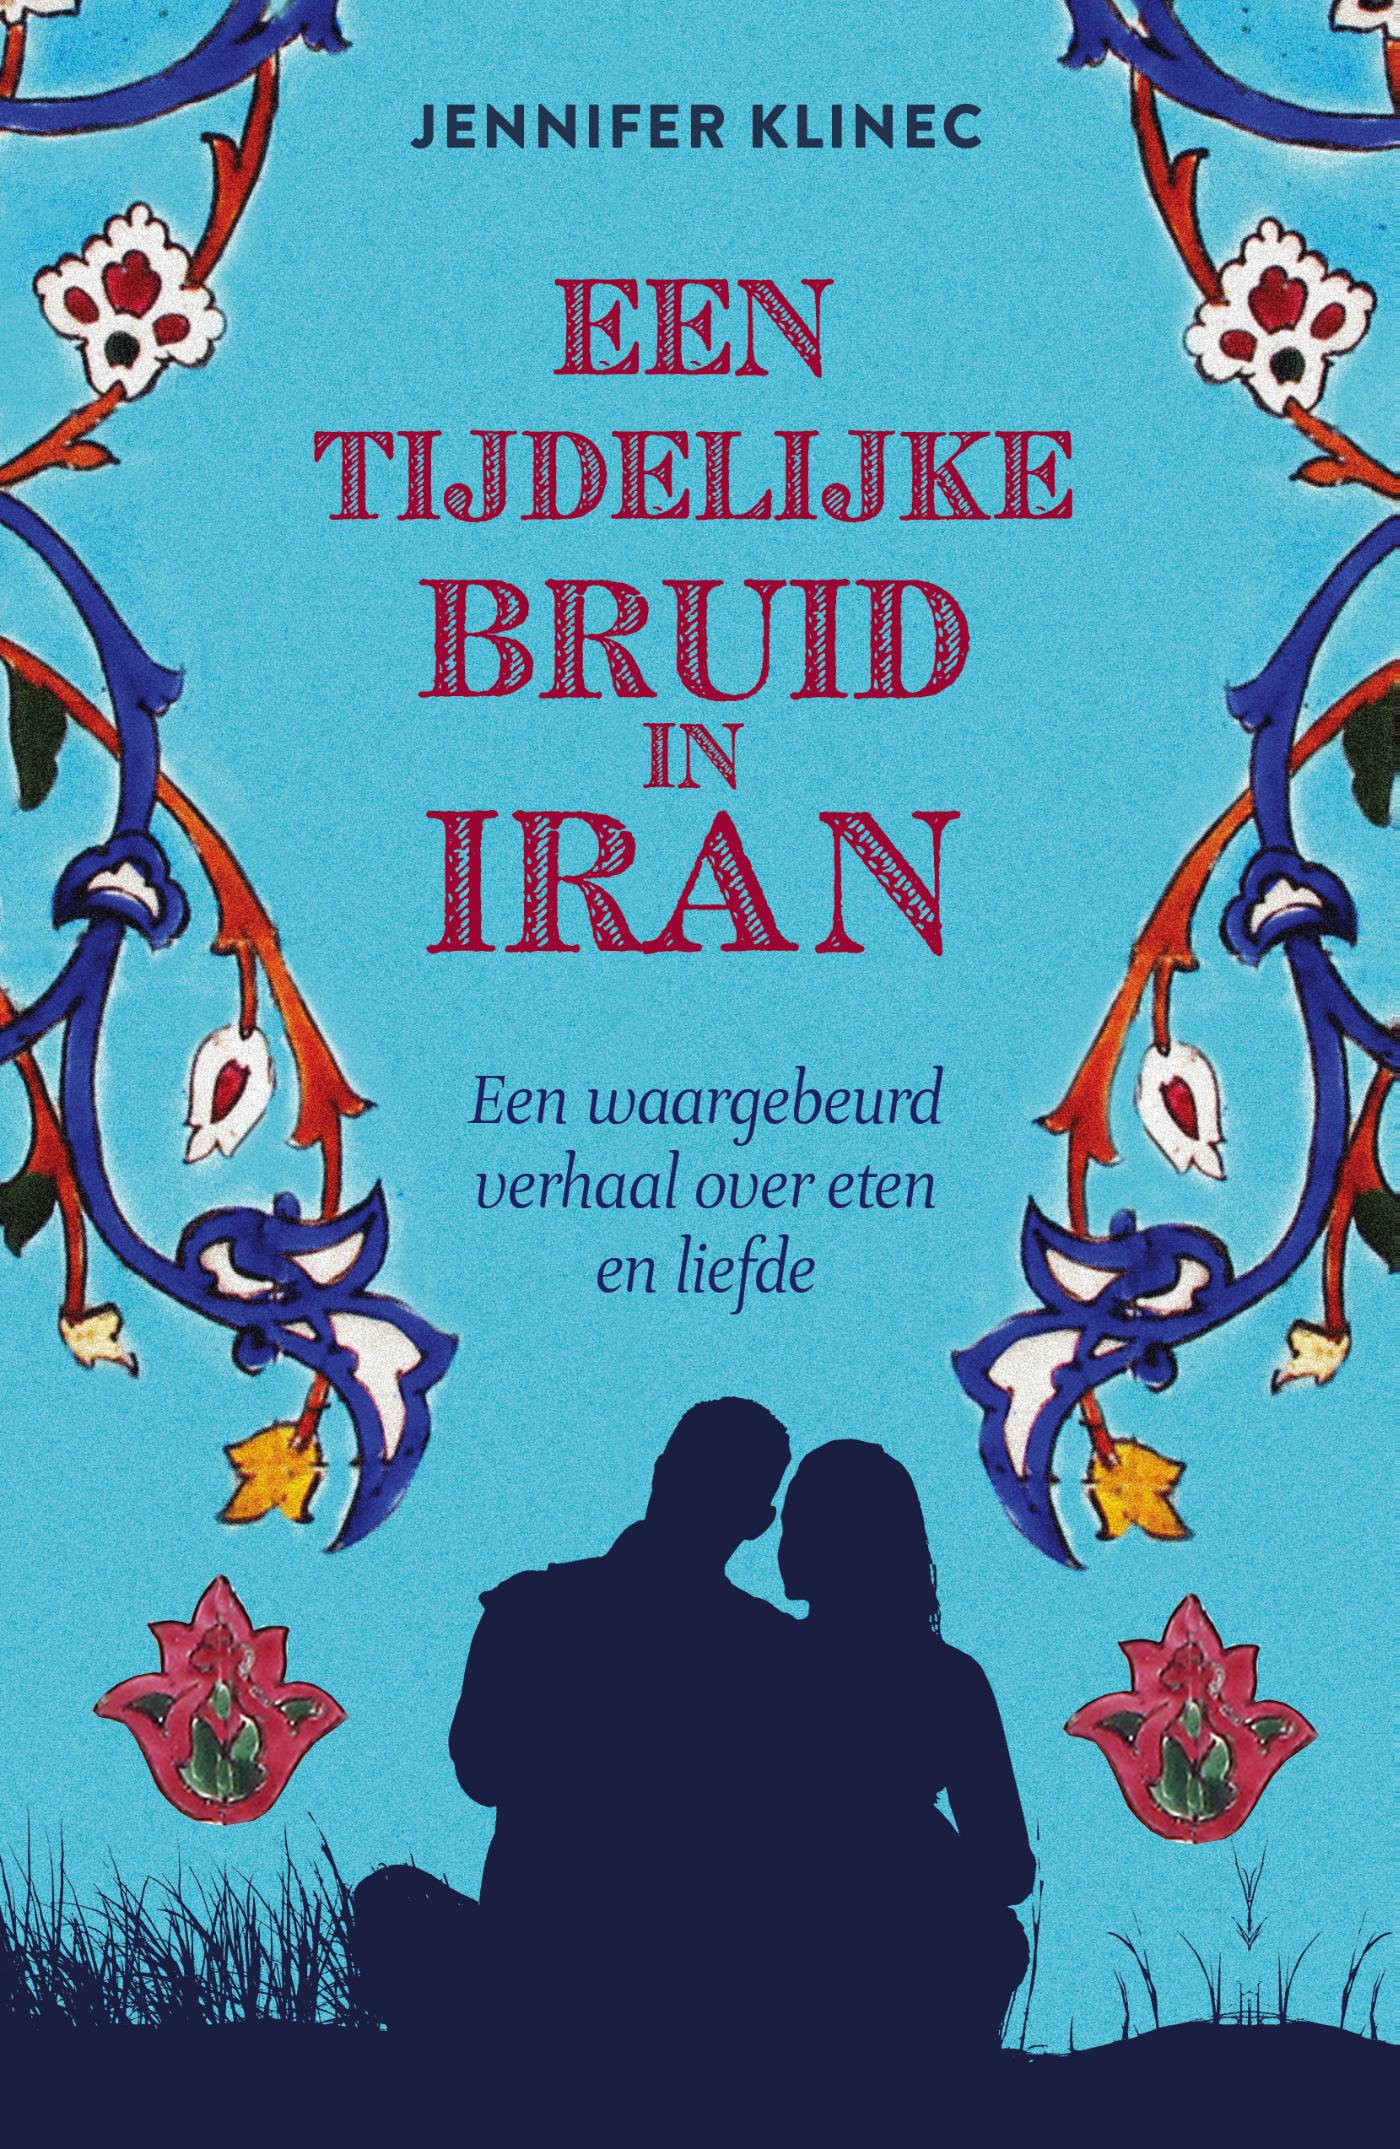 Een tijdelijke bruid in Iran (Ebook)